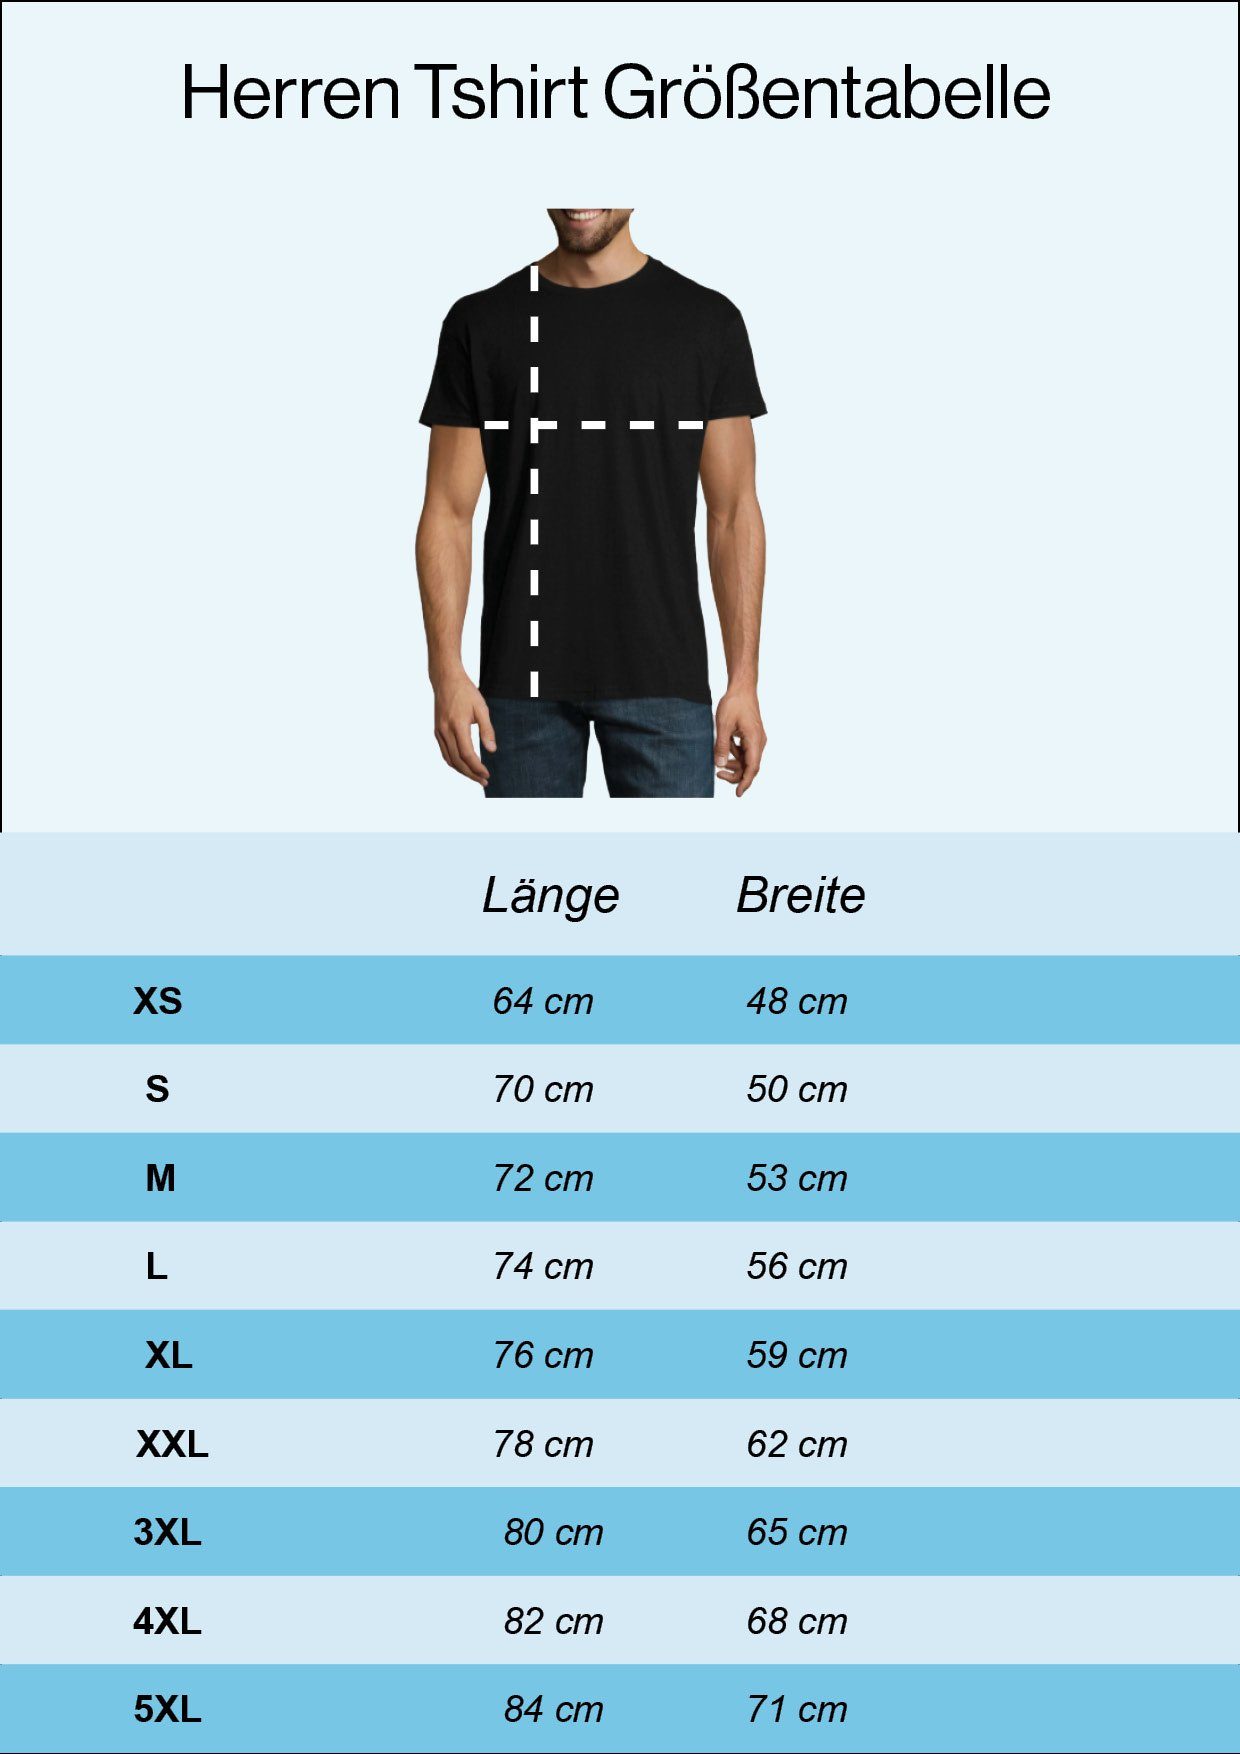 Youth Designz T-Shirt Ich Stunts Meine Mache Alle Frontprint mit Navyblau Shirt Selber Herren trendigem